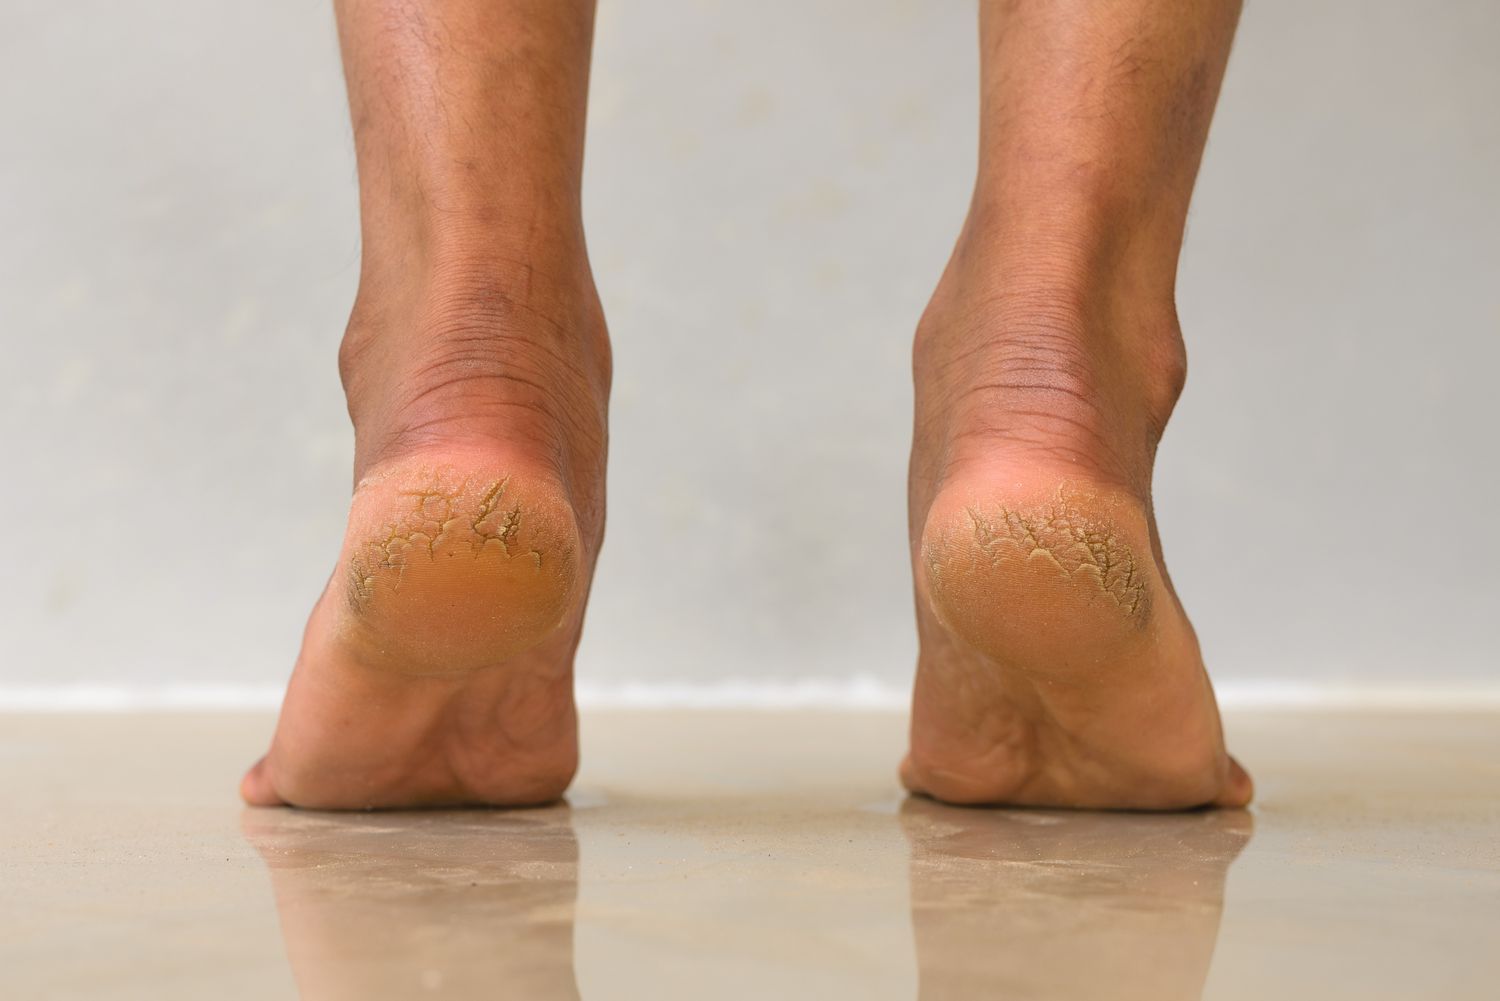 Cracked Heels: కాళ్ల పగుళ్లతో ఇబ్బంది పడుతున్నారా.. అయితే ఇలా చేయాల్సిందే?